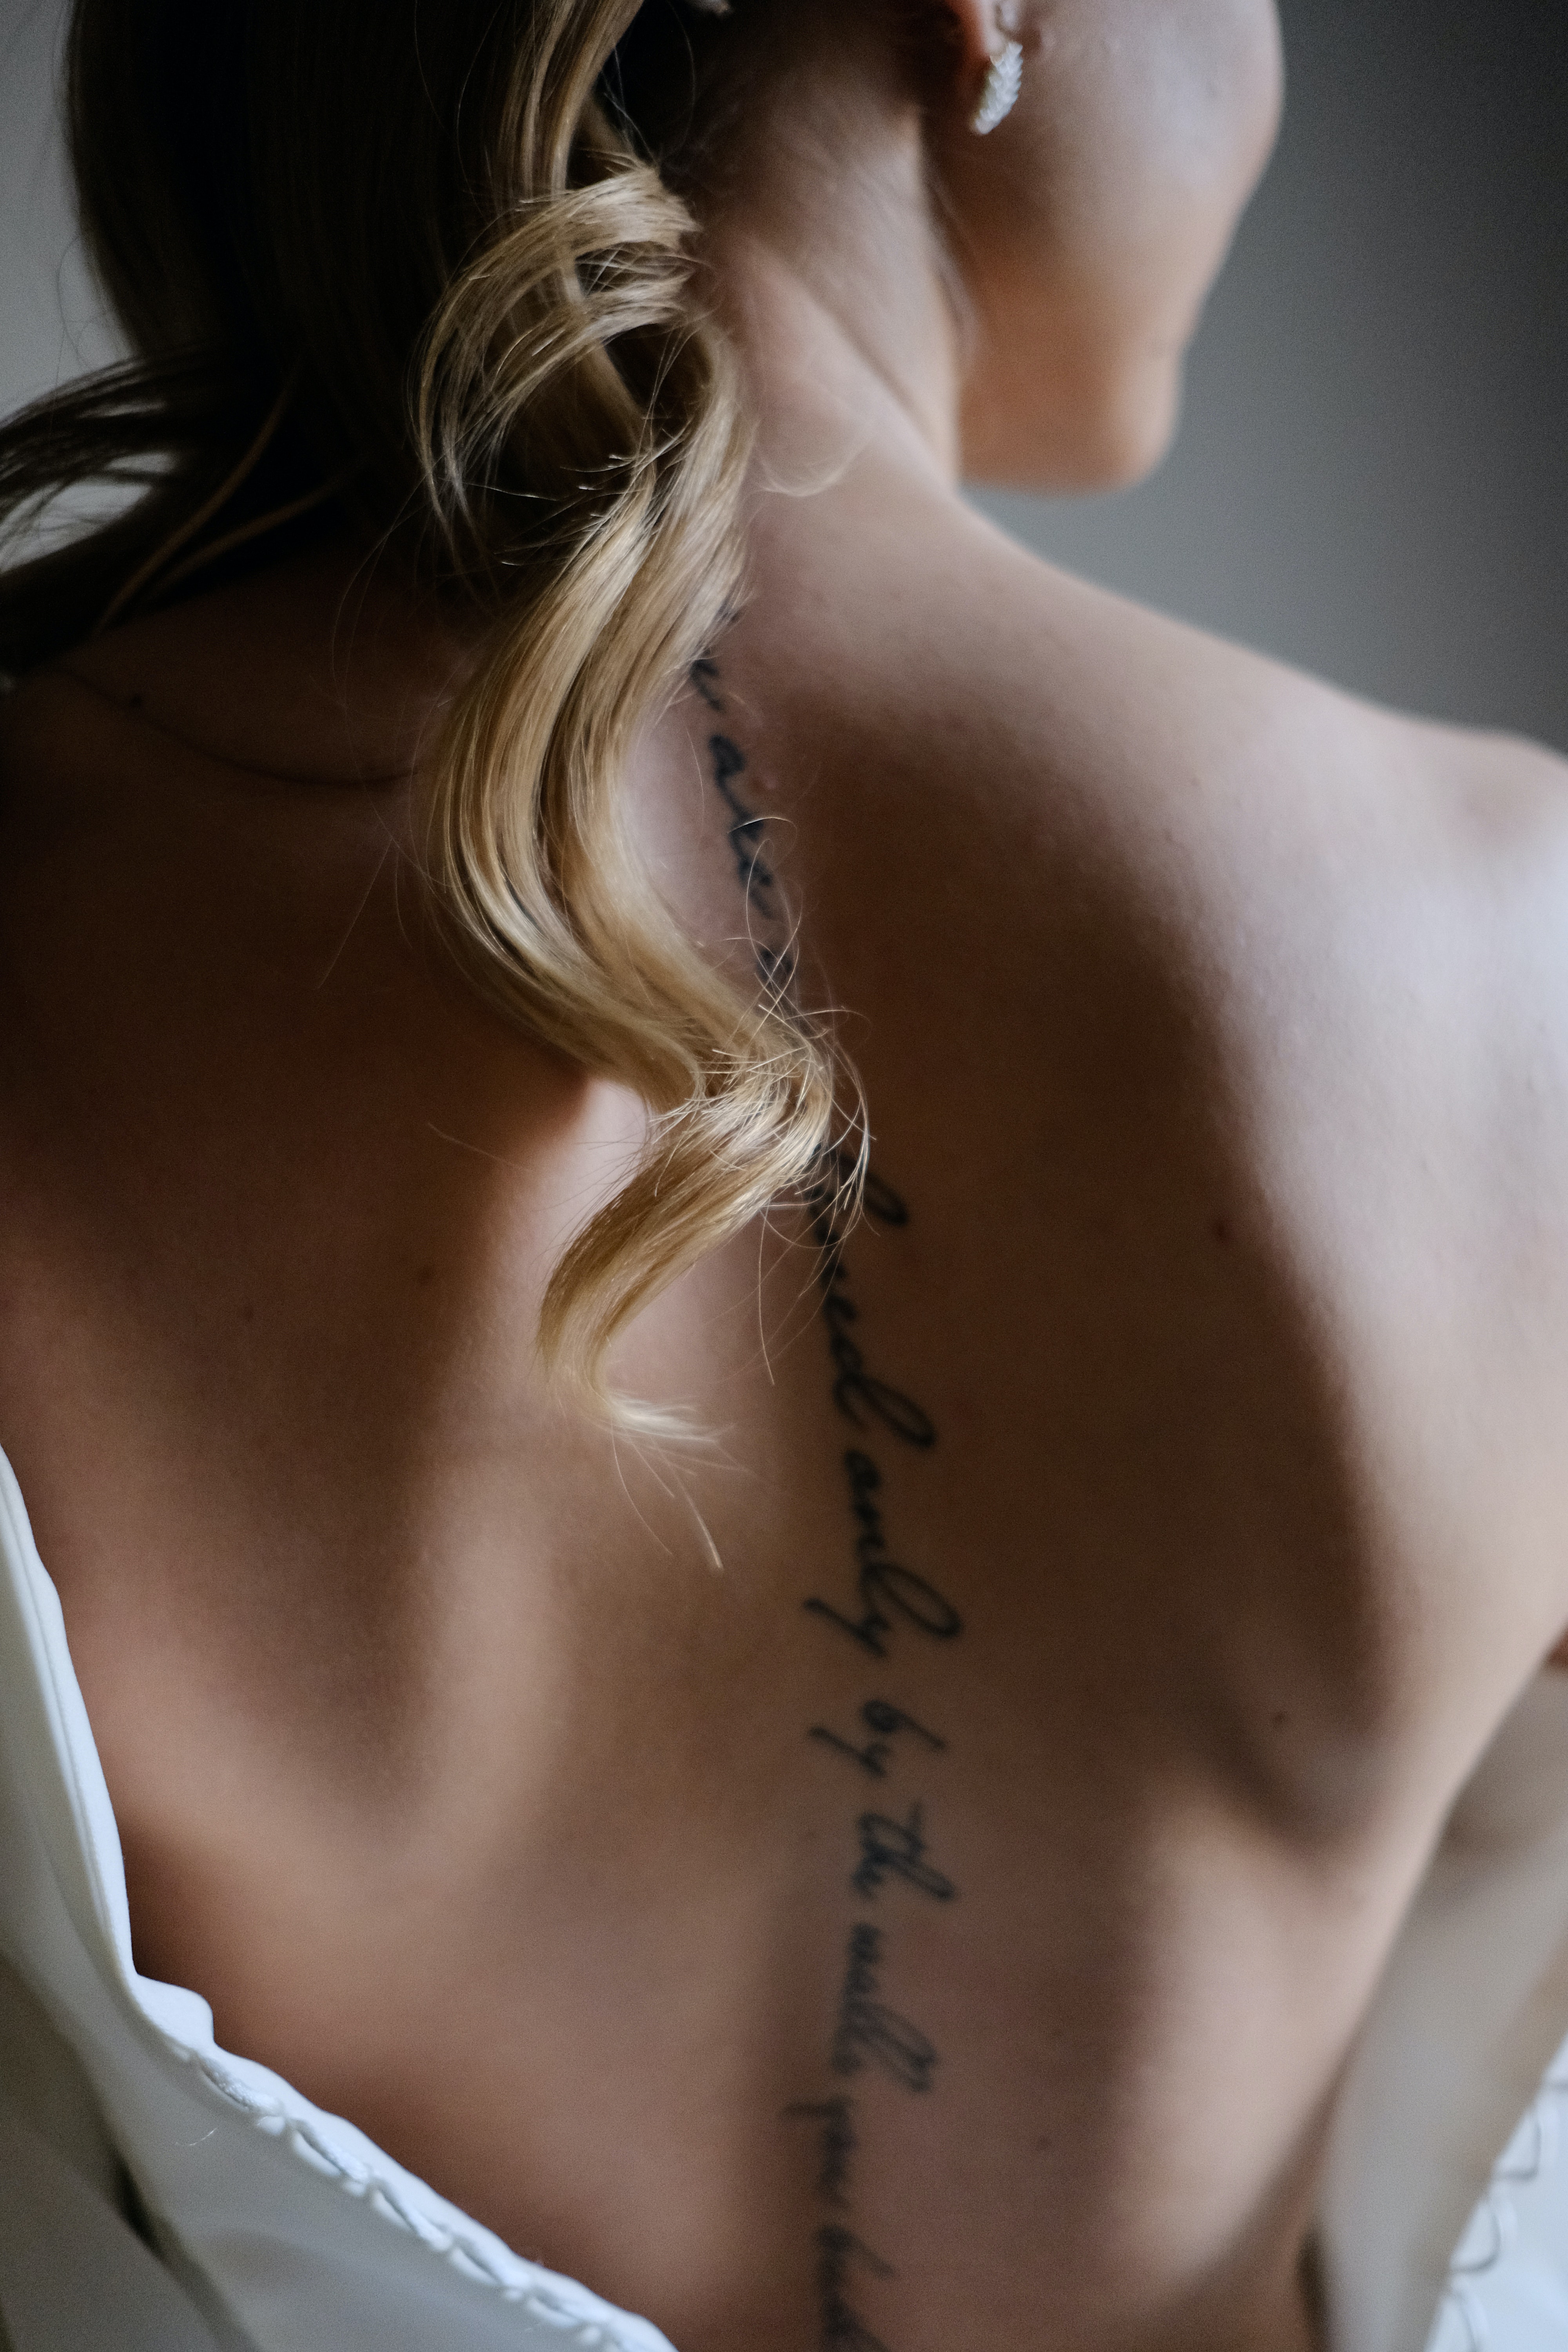 γυναικεια πλατη με τατουαζ